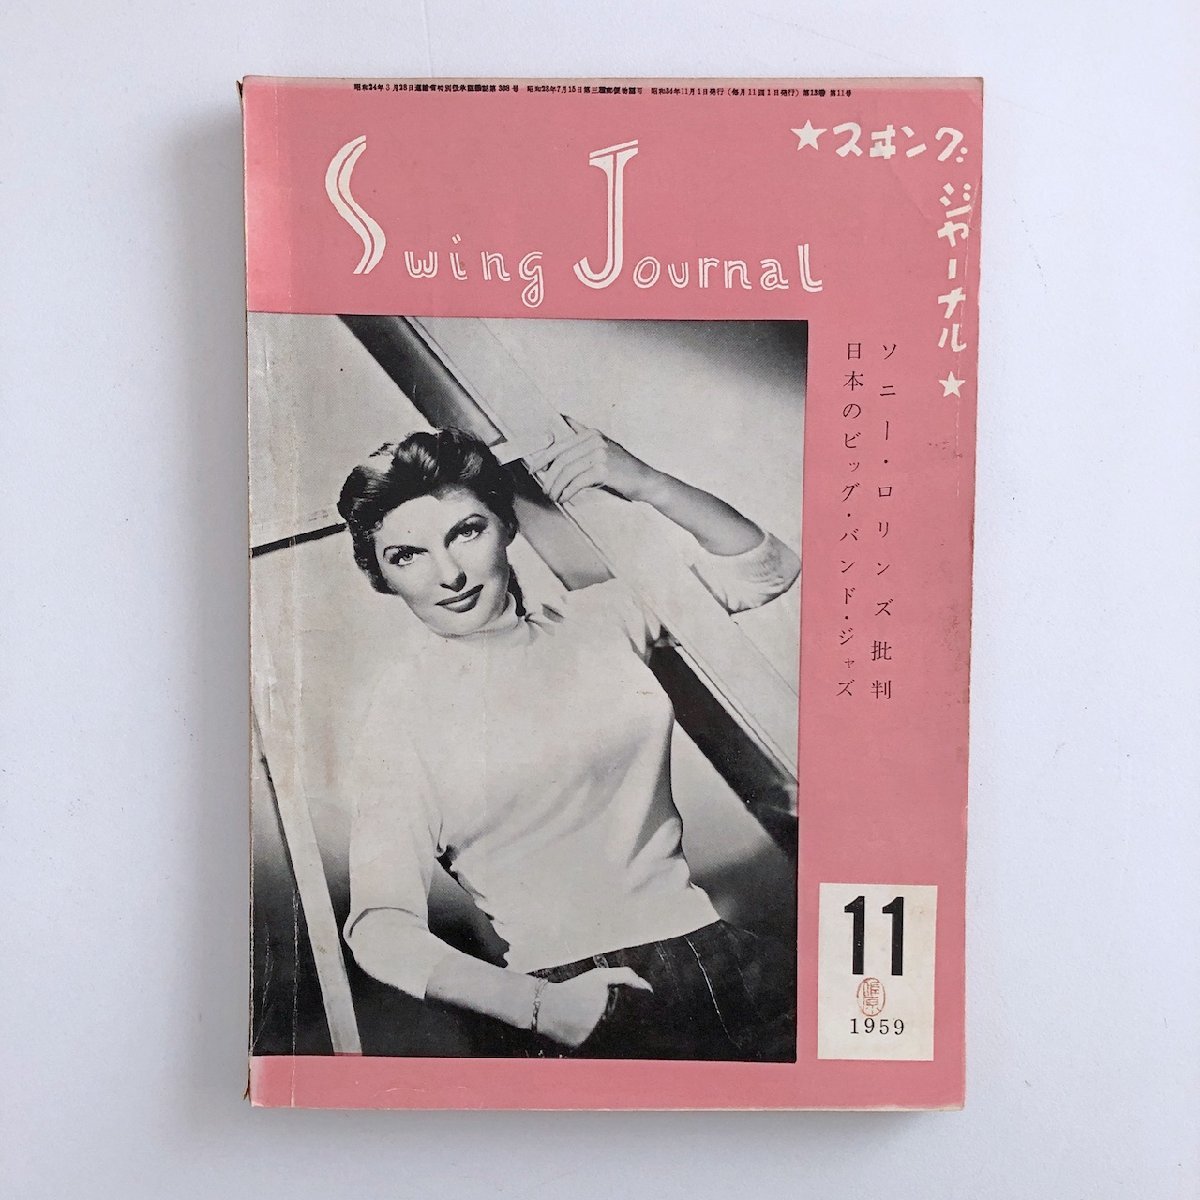 スイング・ジャーナル / Swing Journal / 1959年 11号 / ソニー・ロリンズ批判 / 日本のビック・バンド・ジャズ / ※ハガキ切取跡あり 3D6C_画像1